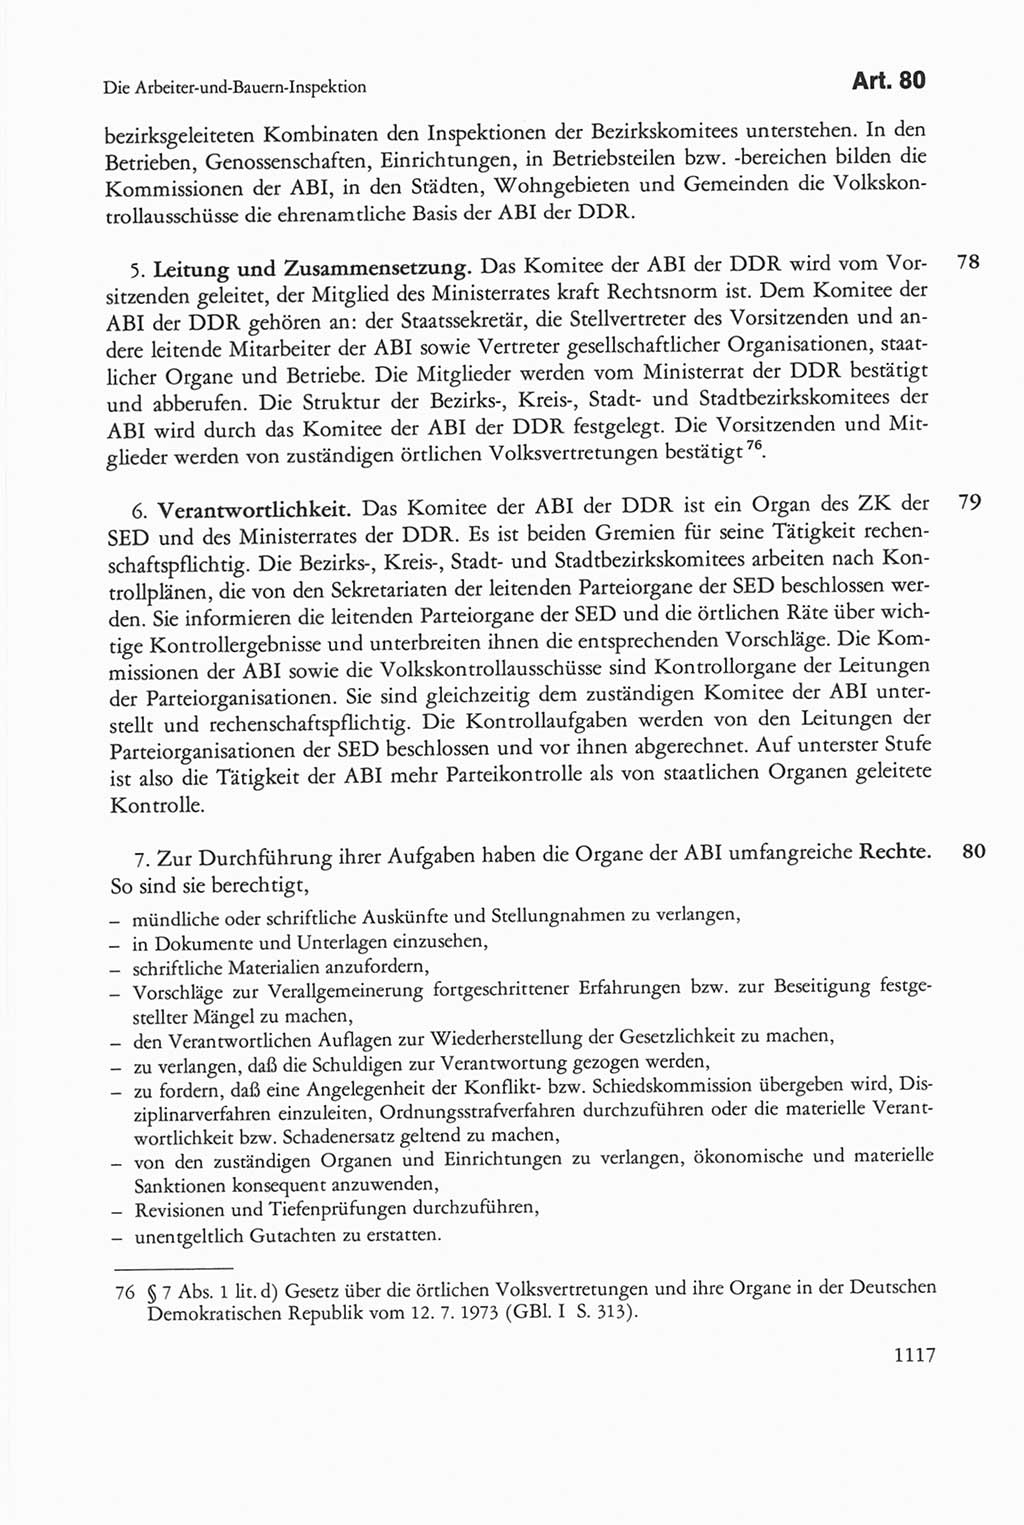 Die sozialistische Verfassung der Deutschen Demokratischen Republik (DDR), Kommentar mit einem Nachtrag 1997, Seite 1117 (Soz. Verf. DDR Komm. Nachtr. 1997, S. 1117)